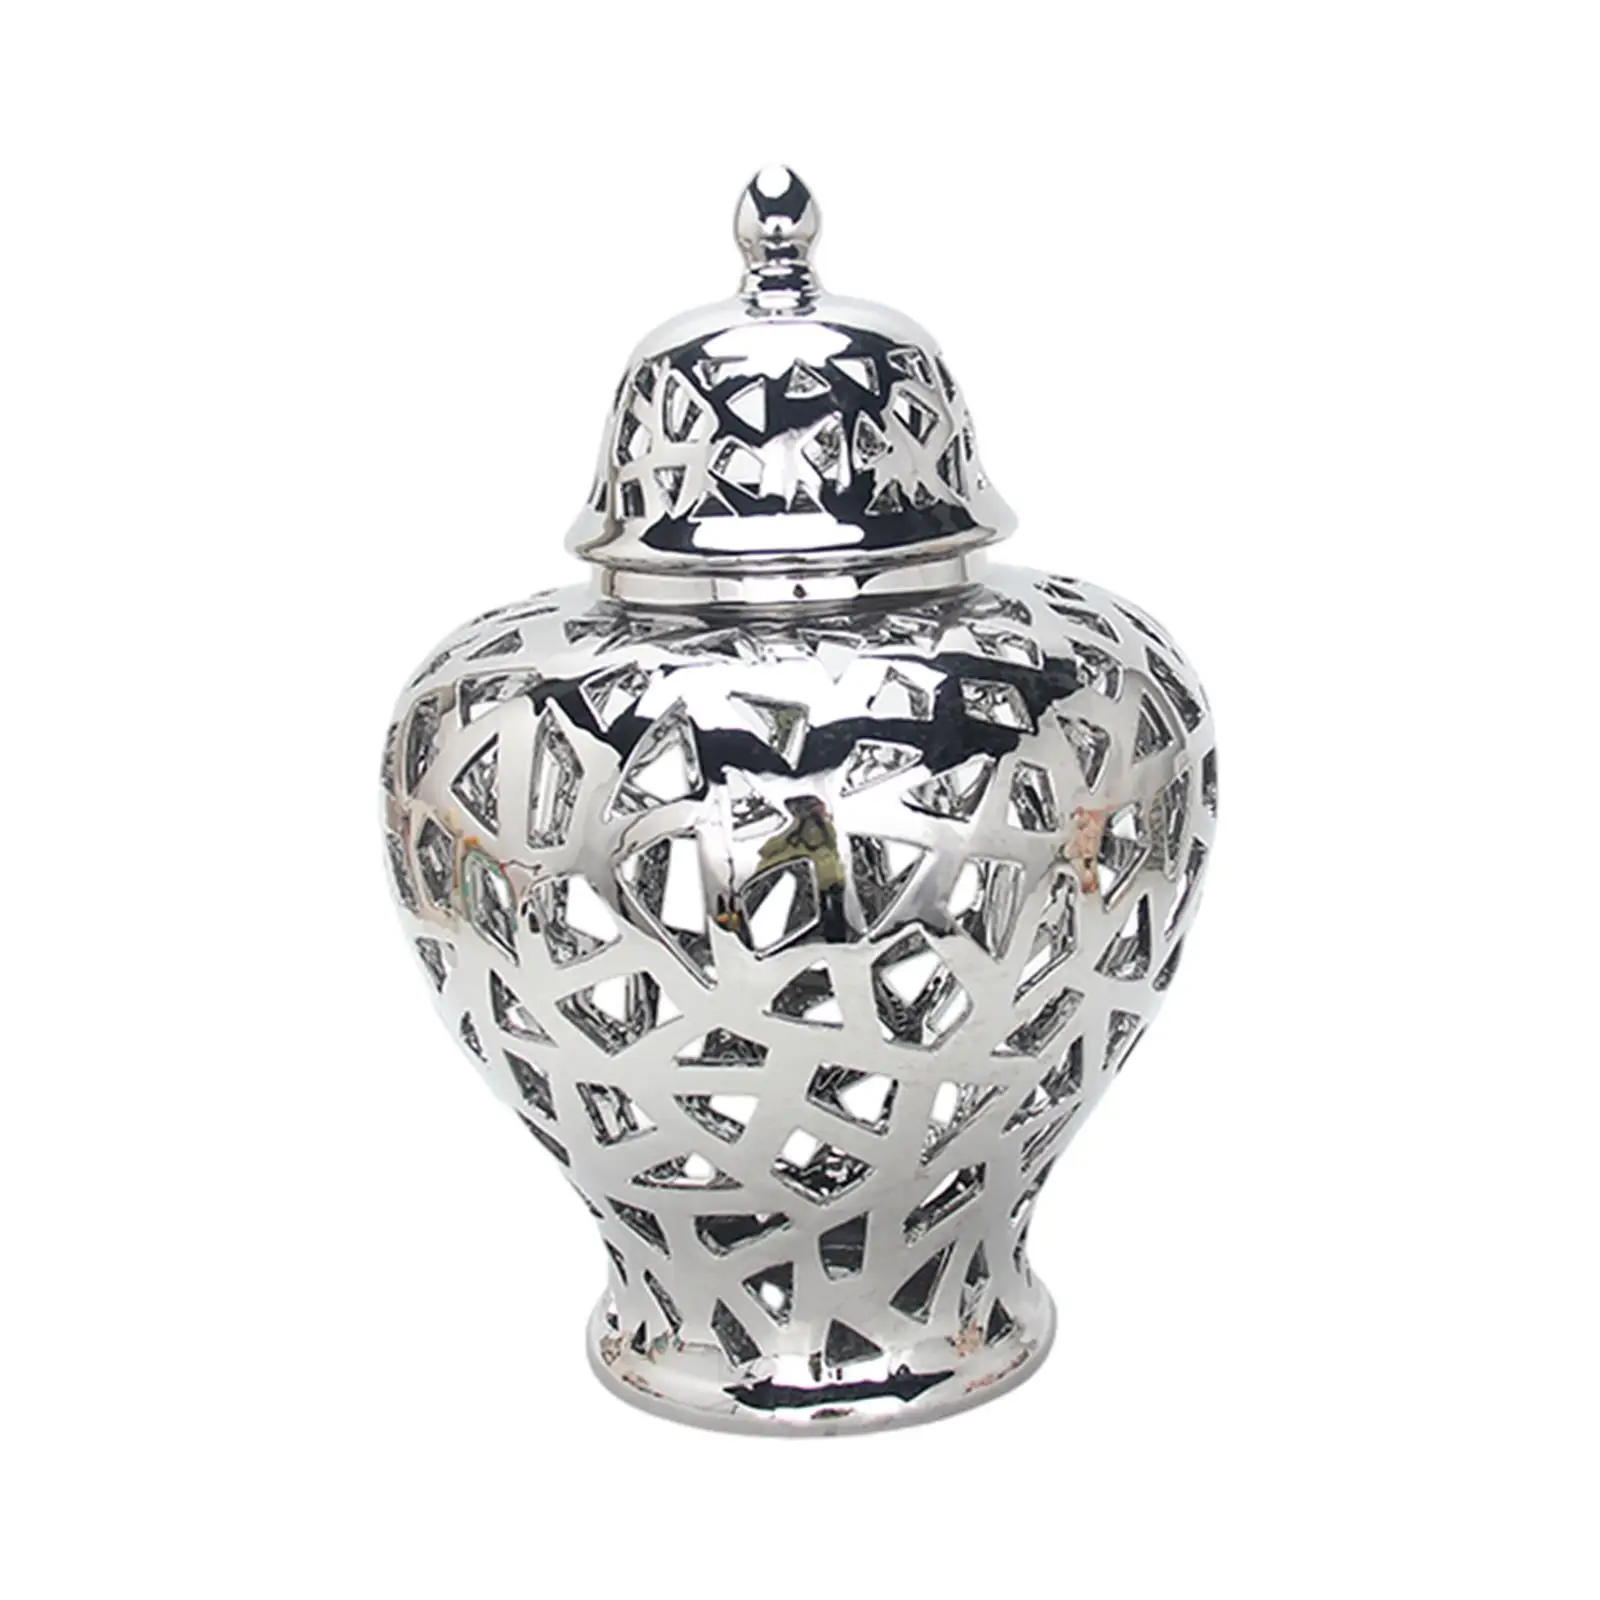 

Фарфоровая банка имбиря, многофункциональная элегантная глазурованная керамическая ваза для цветов для столовой, дома, офиса, спальни, декор для свадебной вечеринки